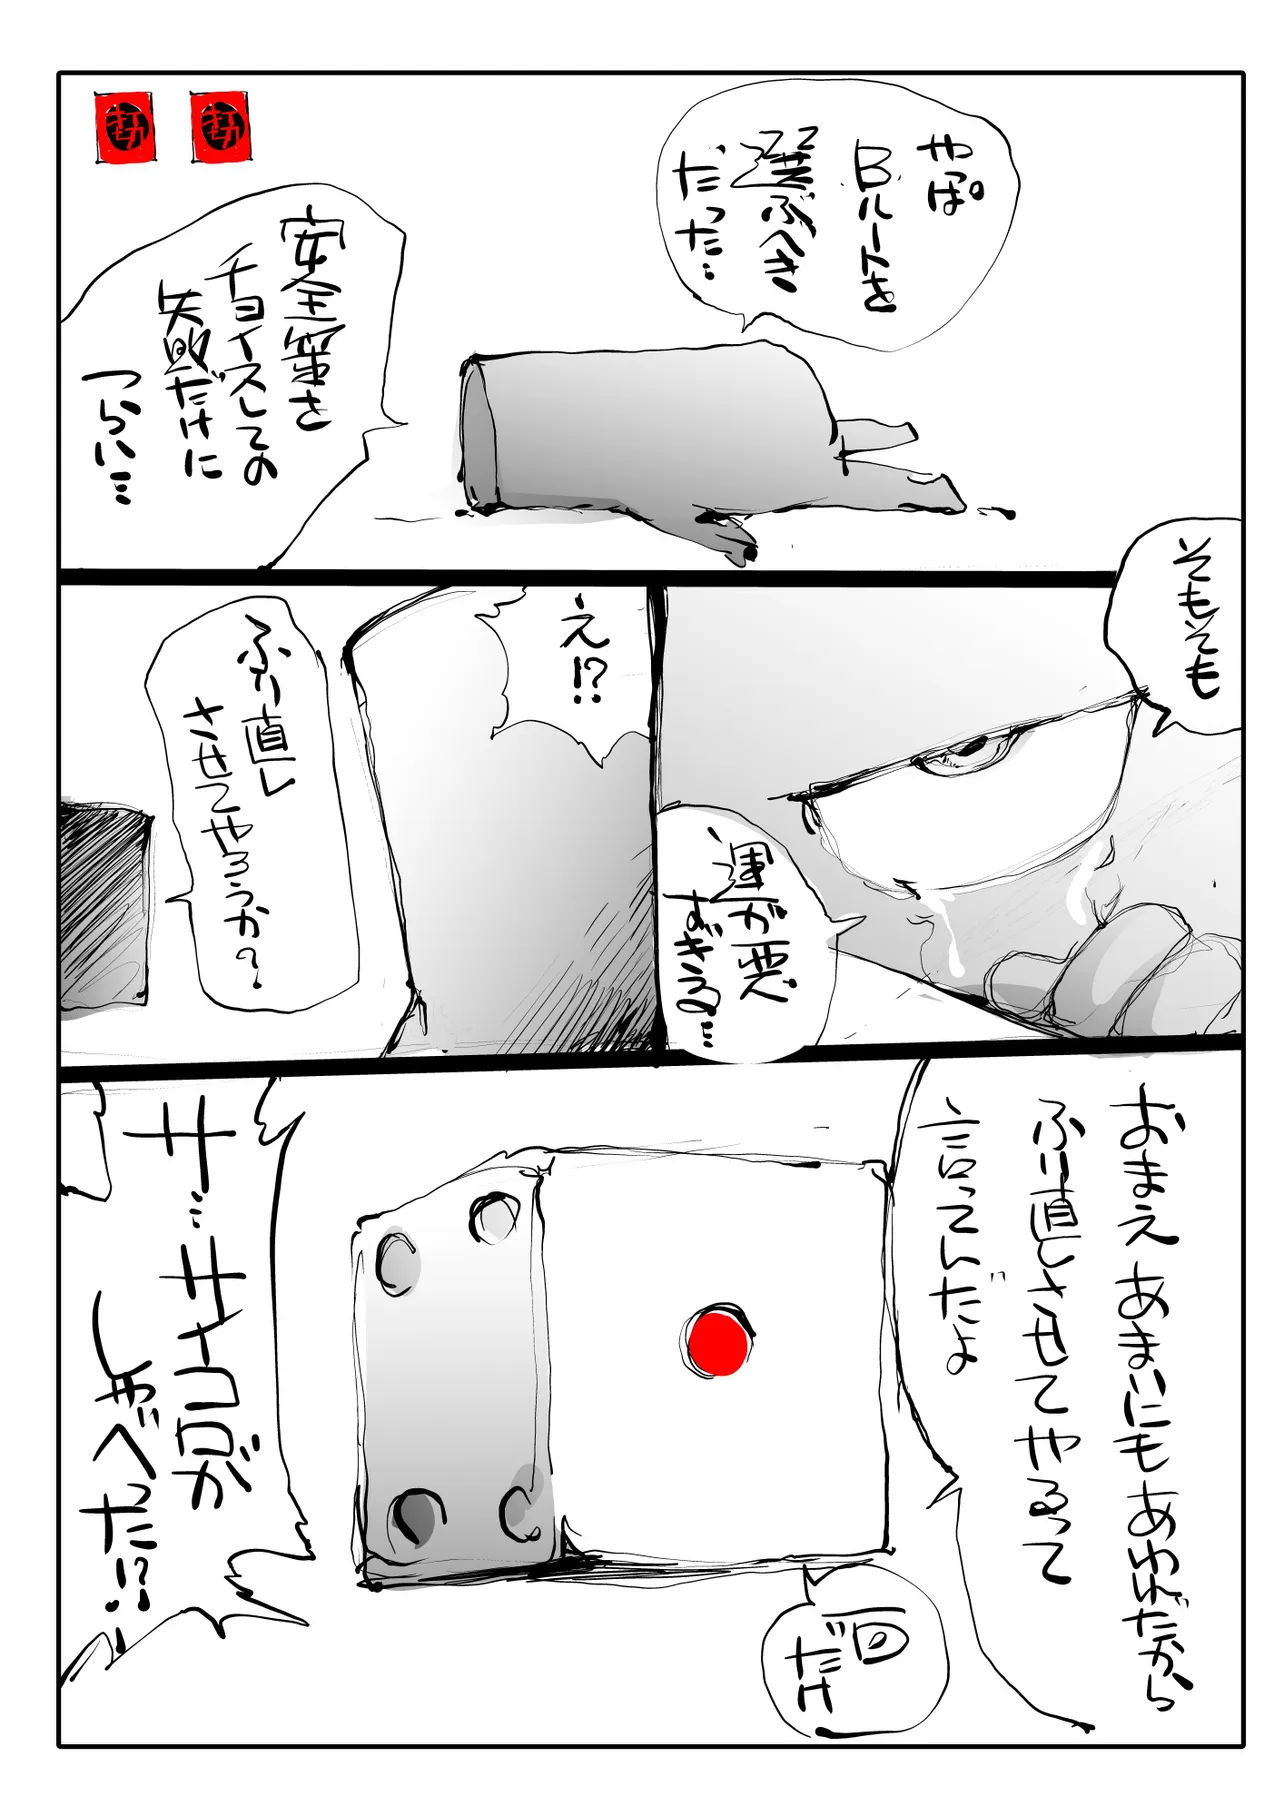 『まんが家すごろく』(21/48)